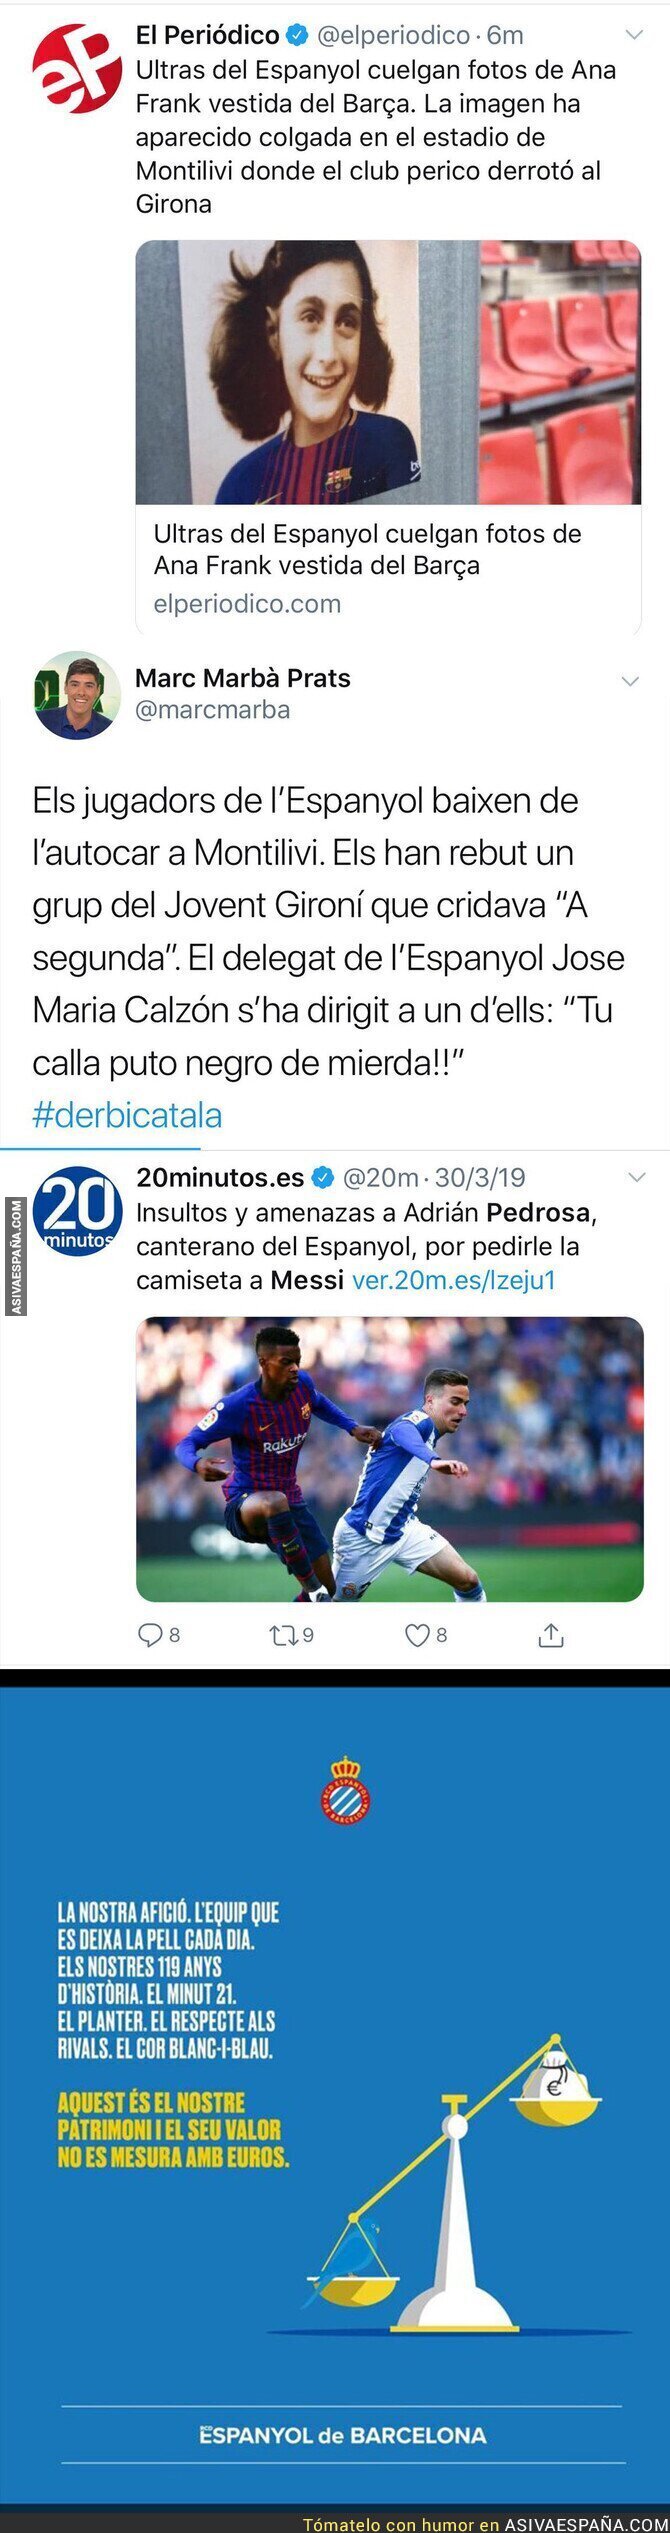 Los lamentables valores del Espanyol en una semana